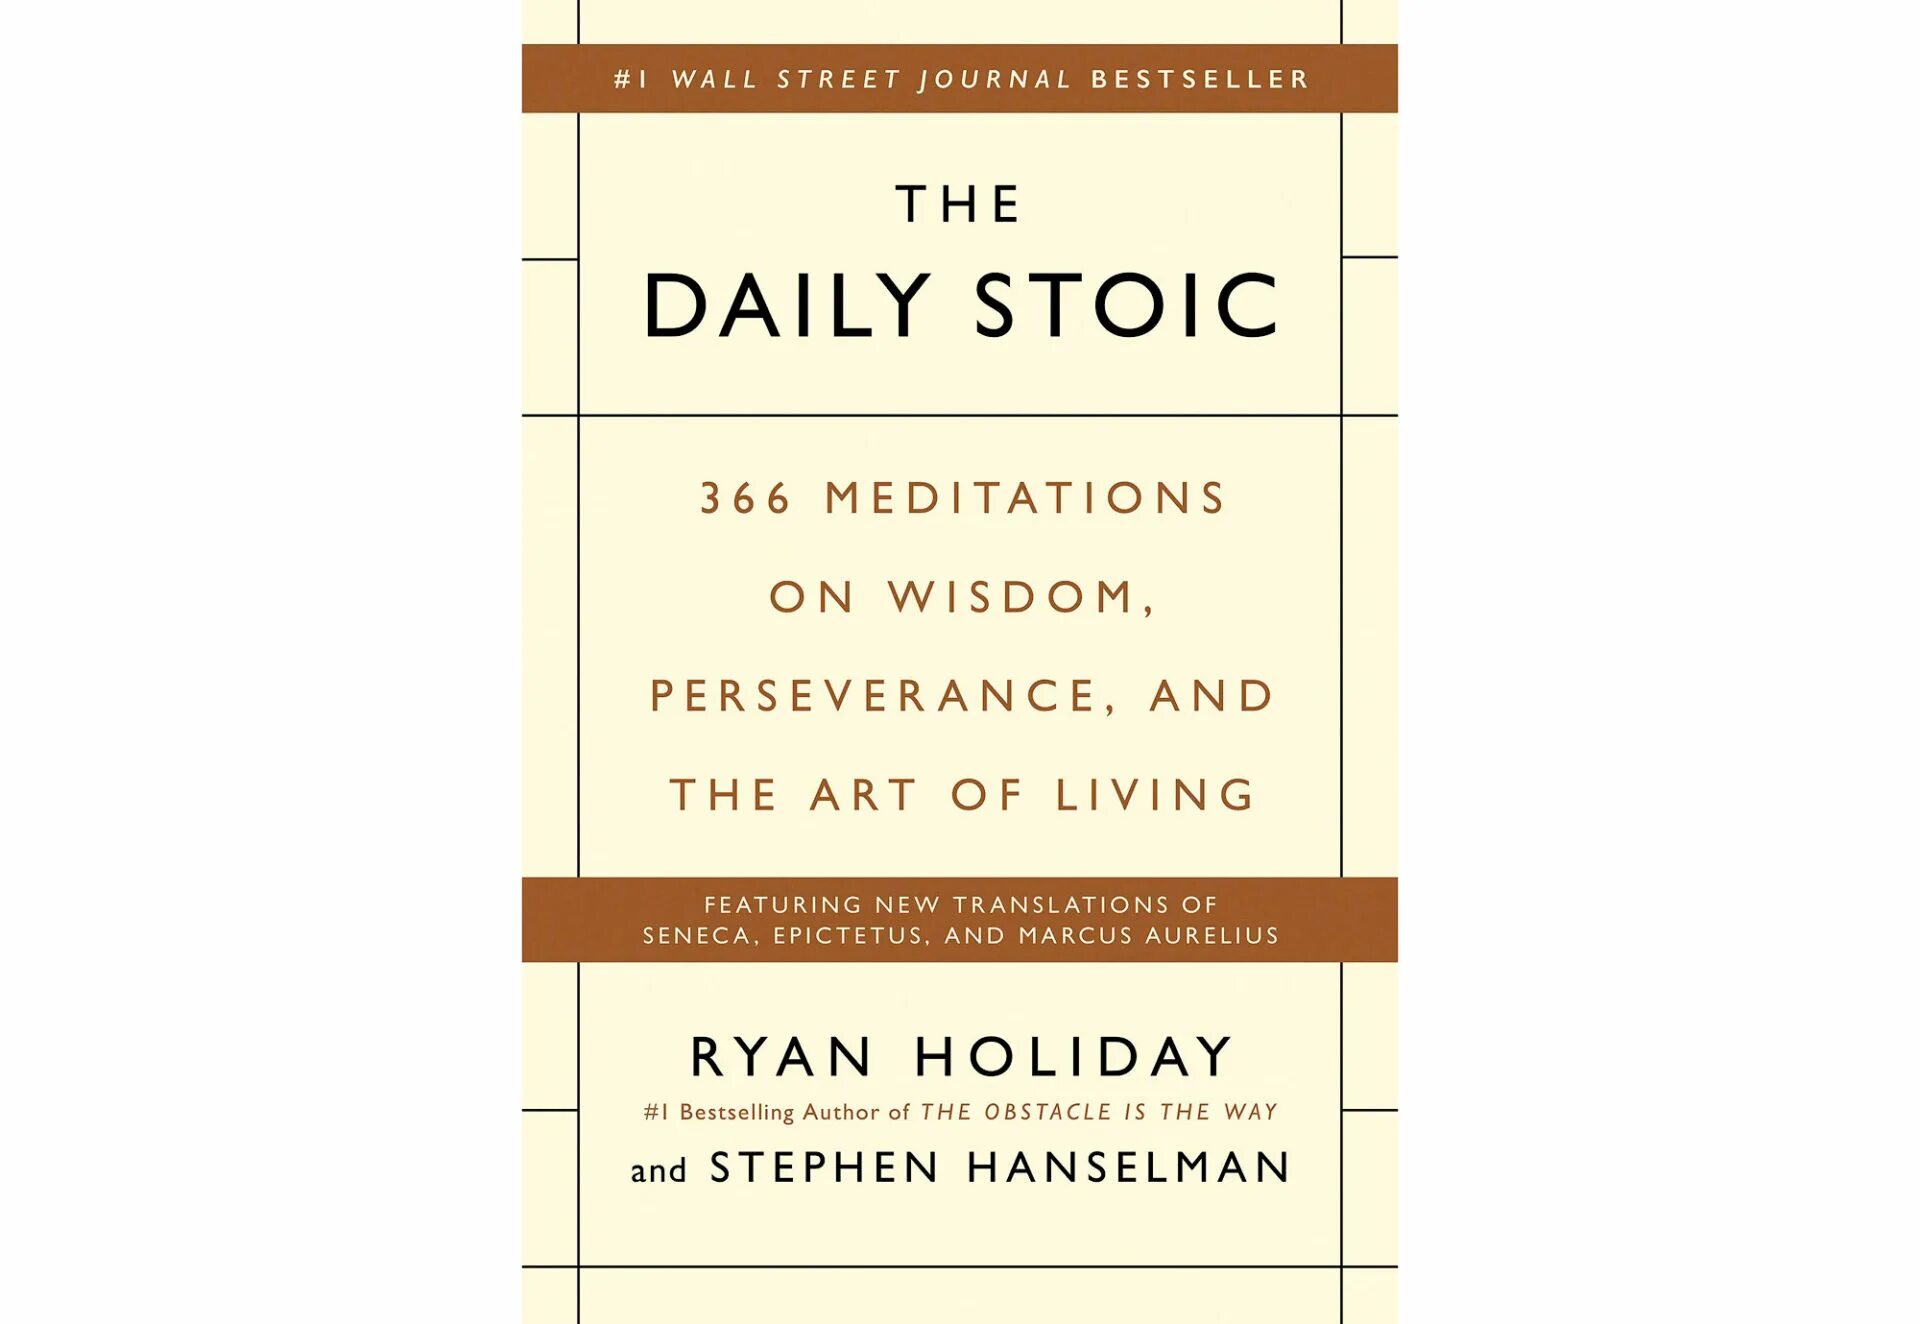 Daily Stoic. Holiday Ryan "Daily Stoic". Stoic приложение.